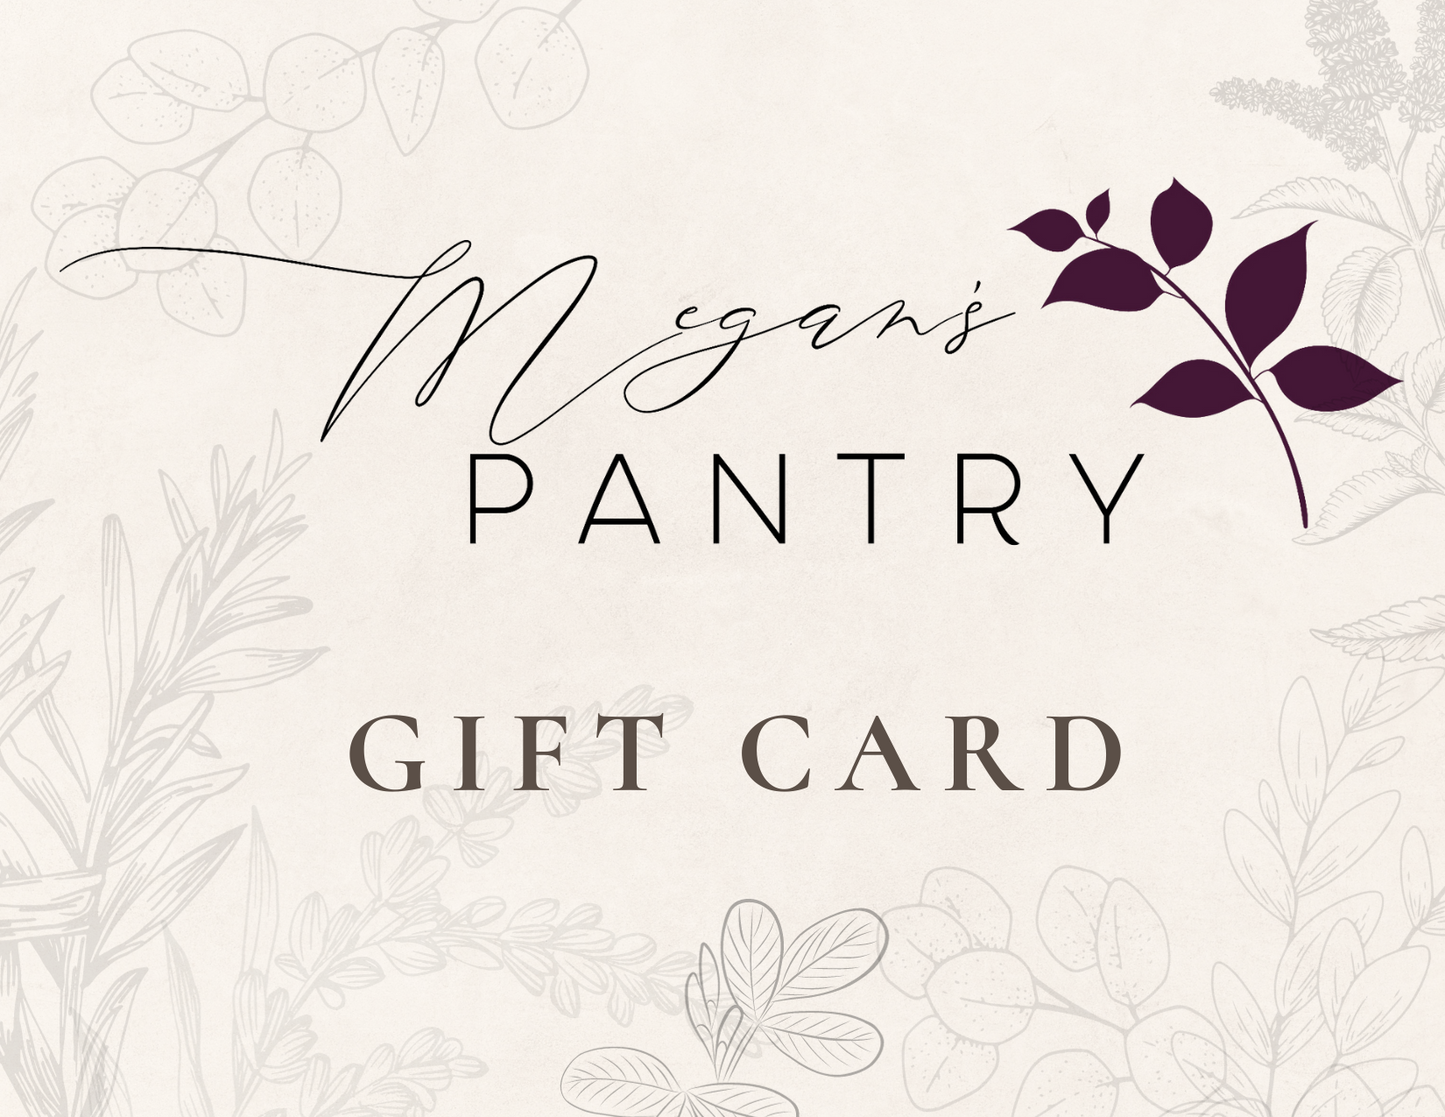 Megan's Pantry Gift Card